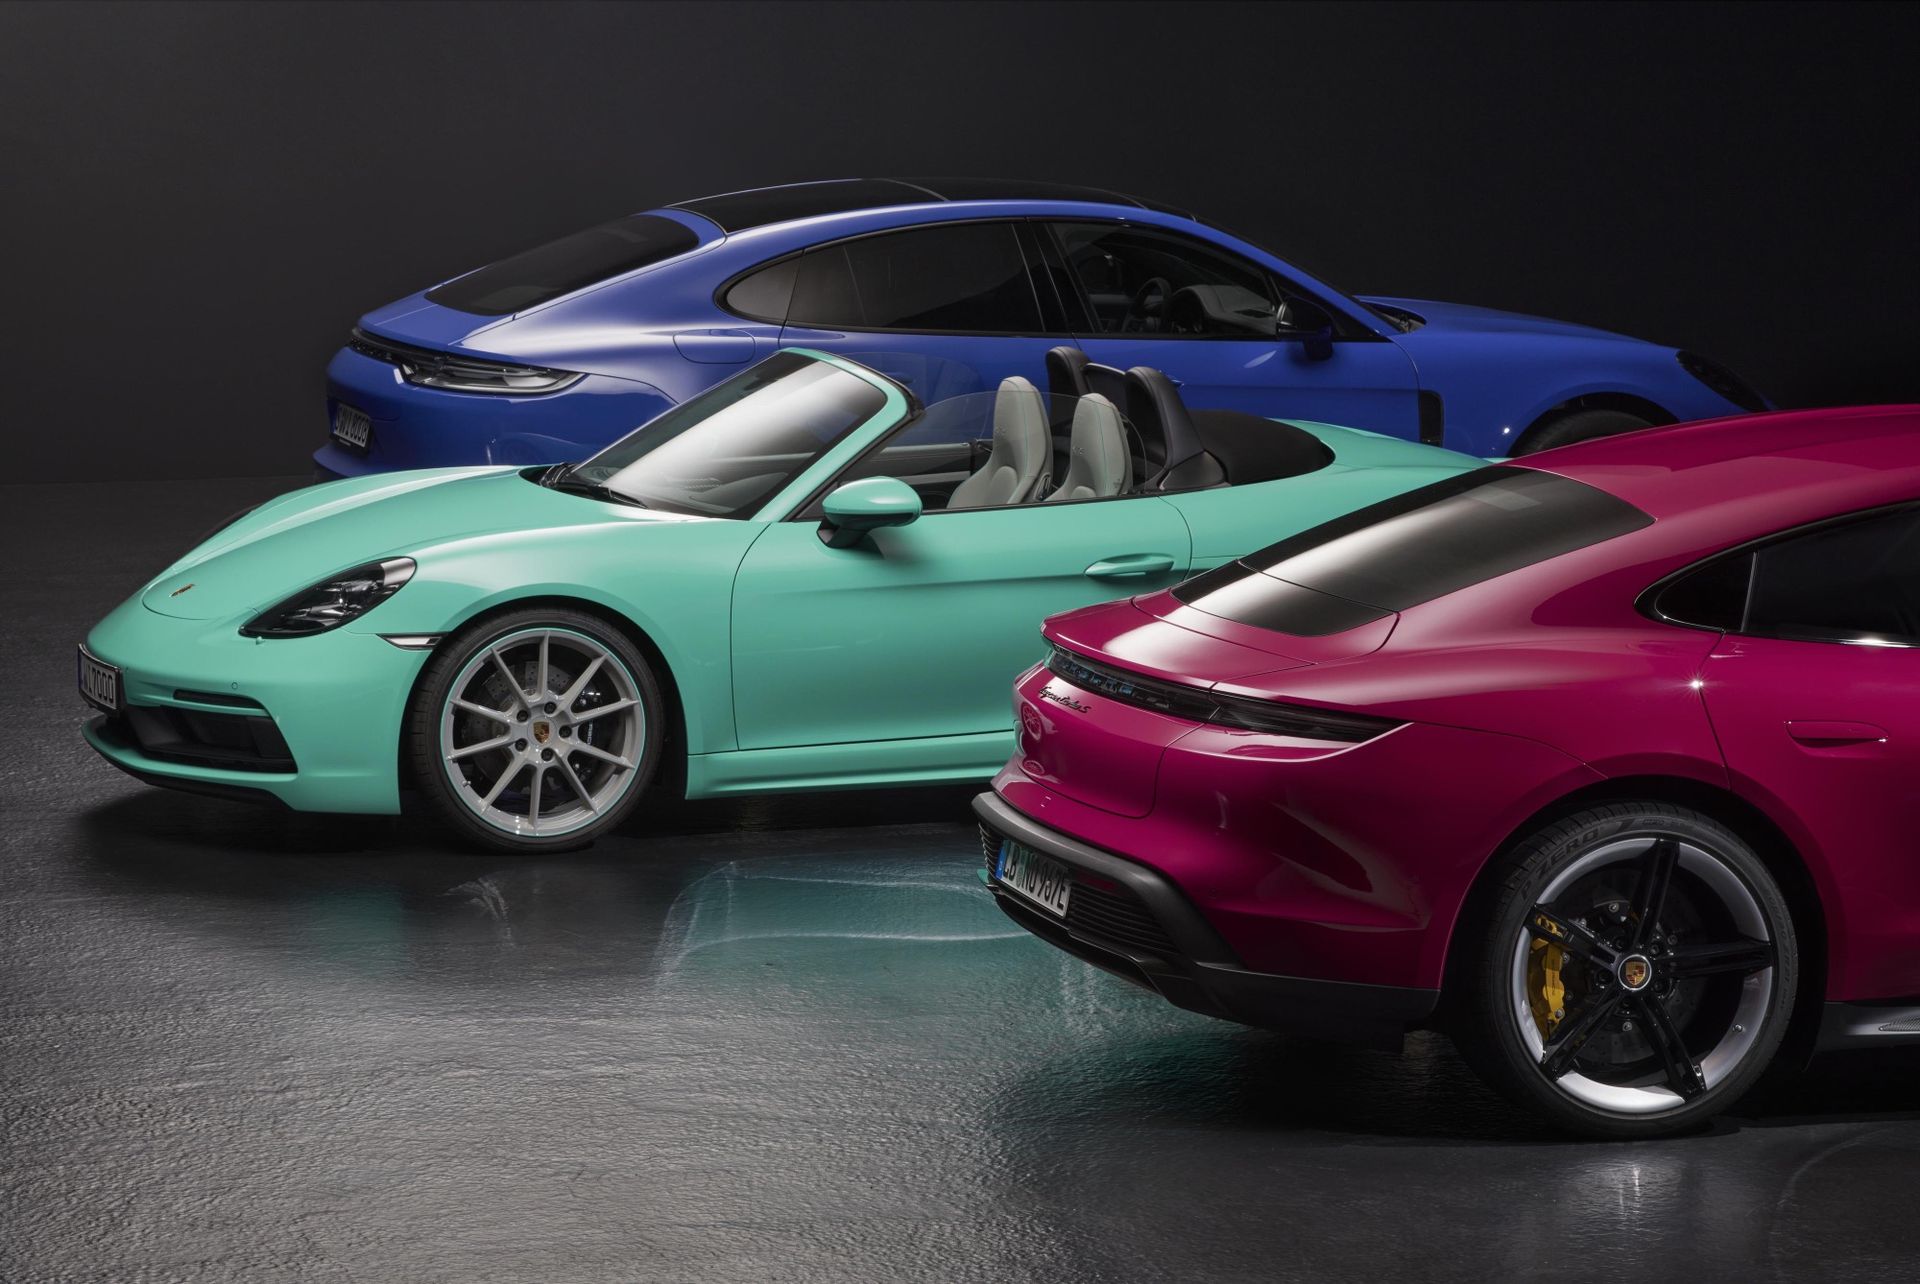 Porsche återupplivar kultfärger från 90-talet